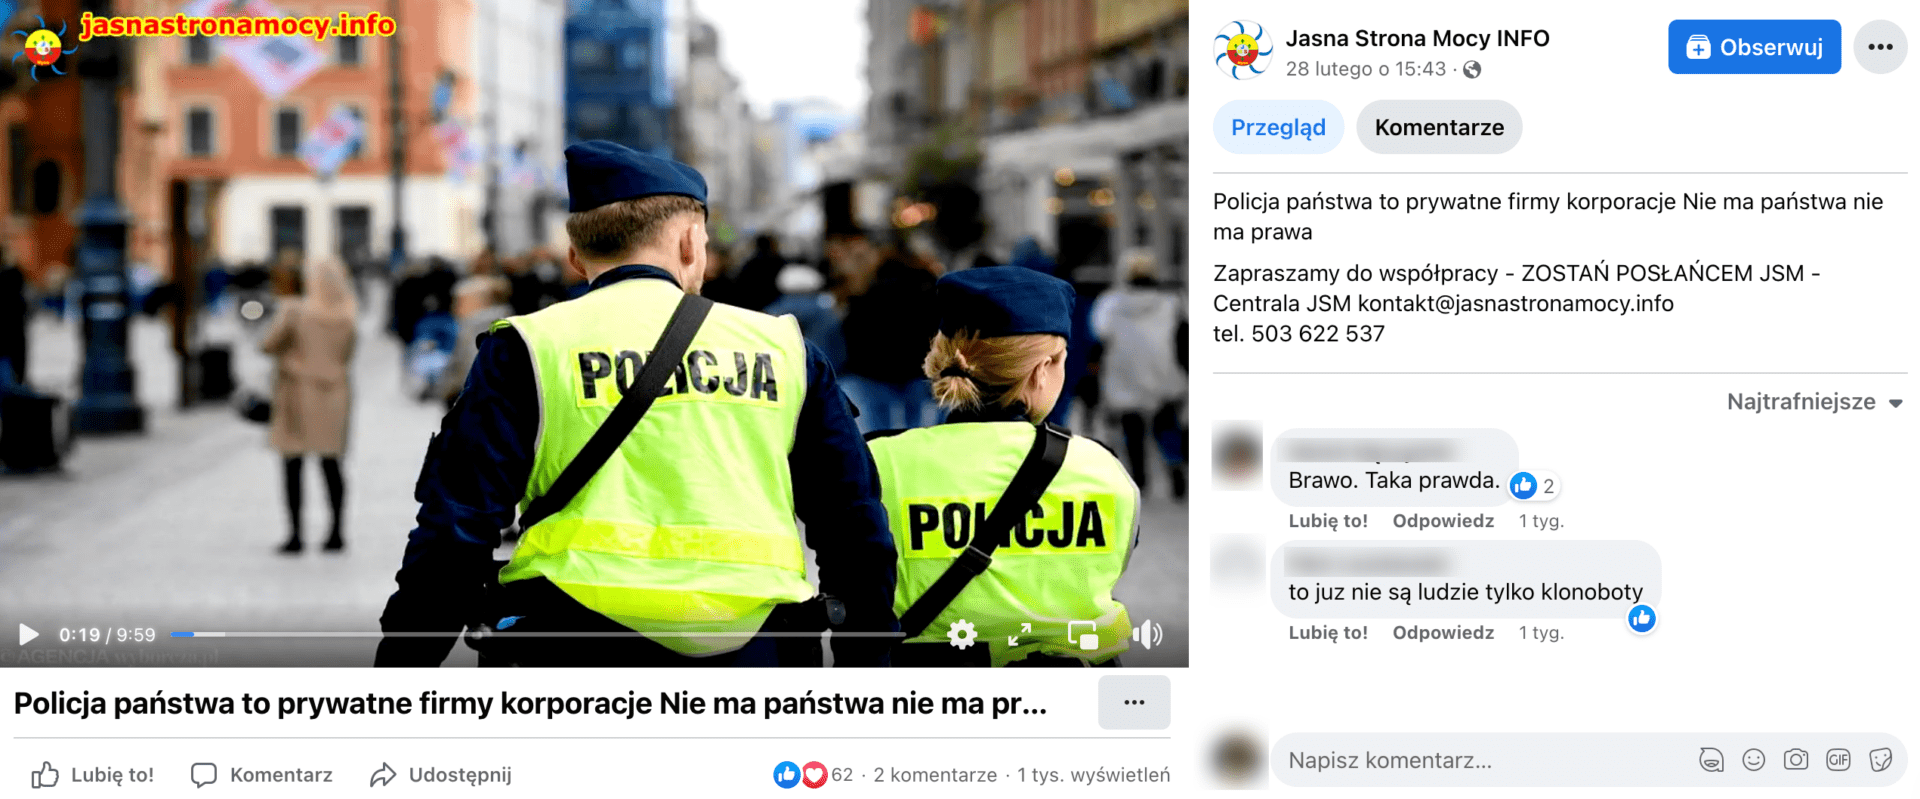 Zrzut ekranu posta na profilu Jasna Strona Mocy INFO na Facebooku, w którym udostępniono omawiane nagranie. Widoczni są funkcjonariusze policji na tle miasta. Wpis zdobył ponad 60 reakcji, 2 komentarze. Wyświetlono go ponad tysiąc razy.